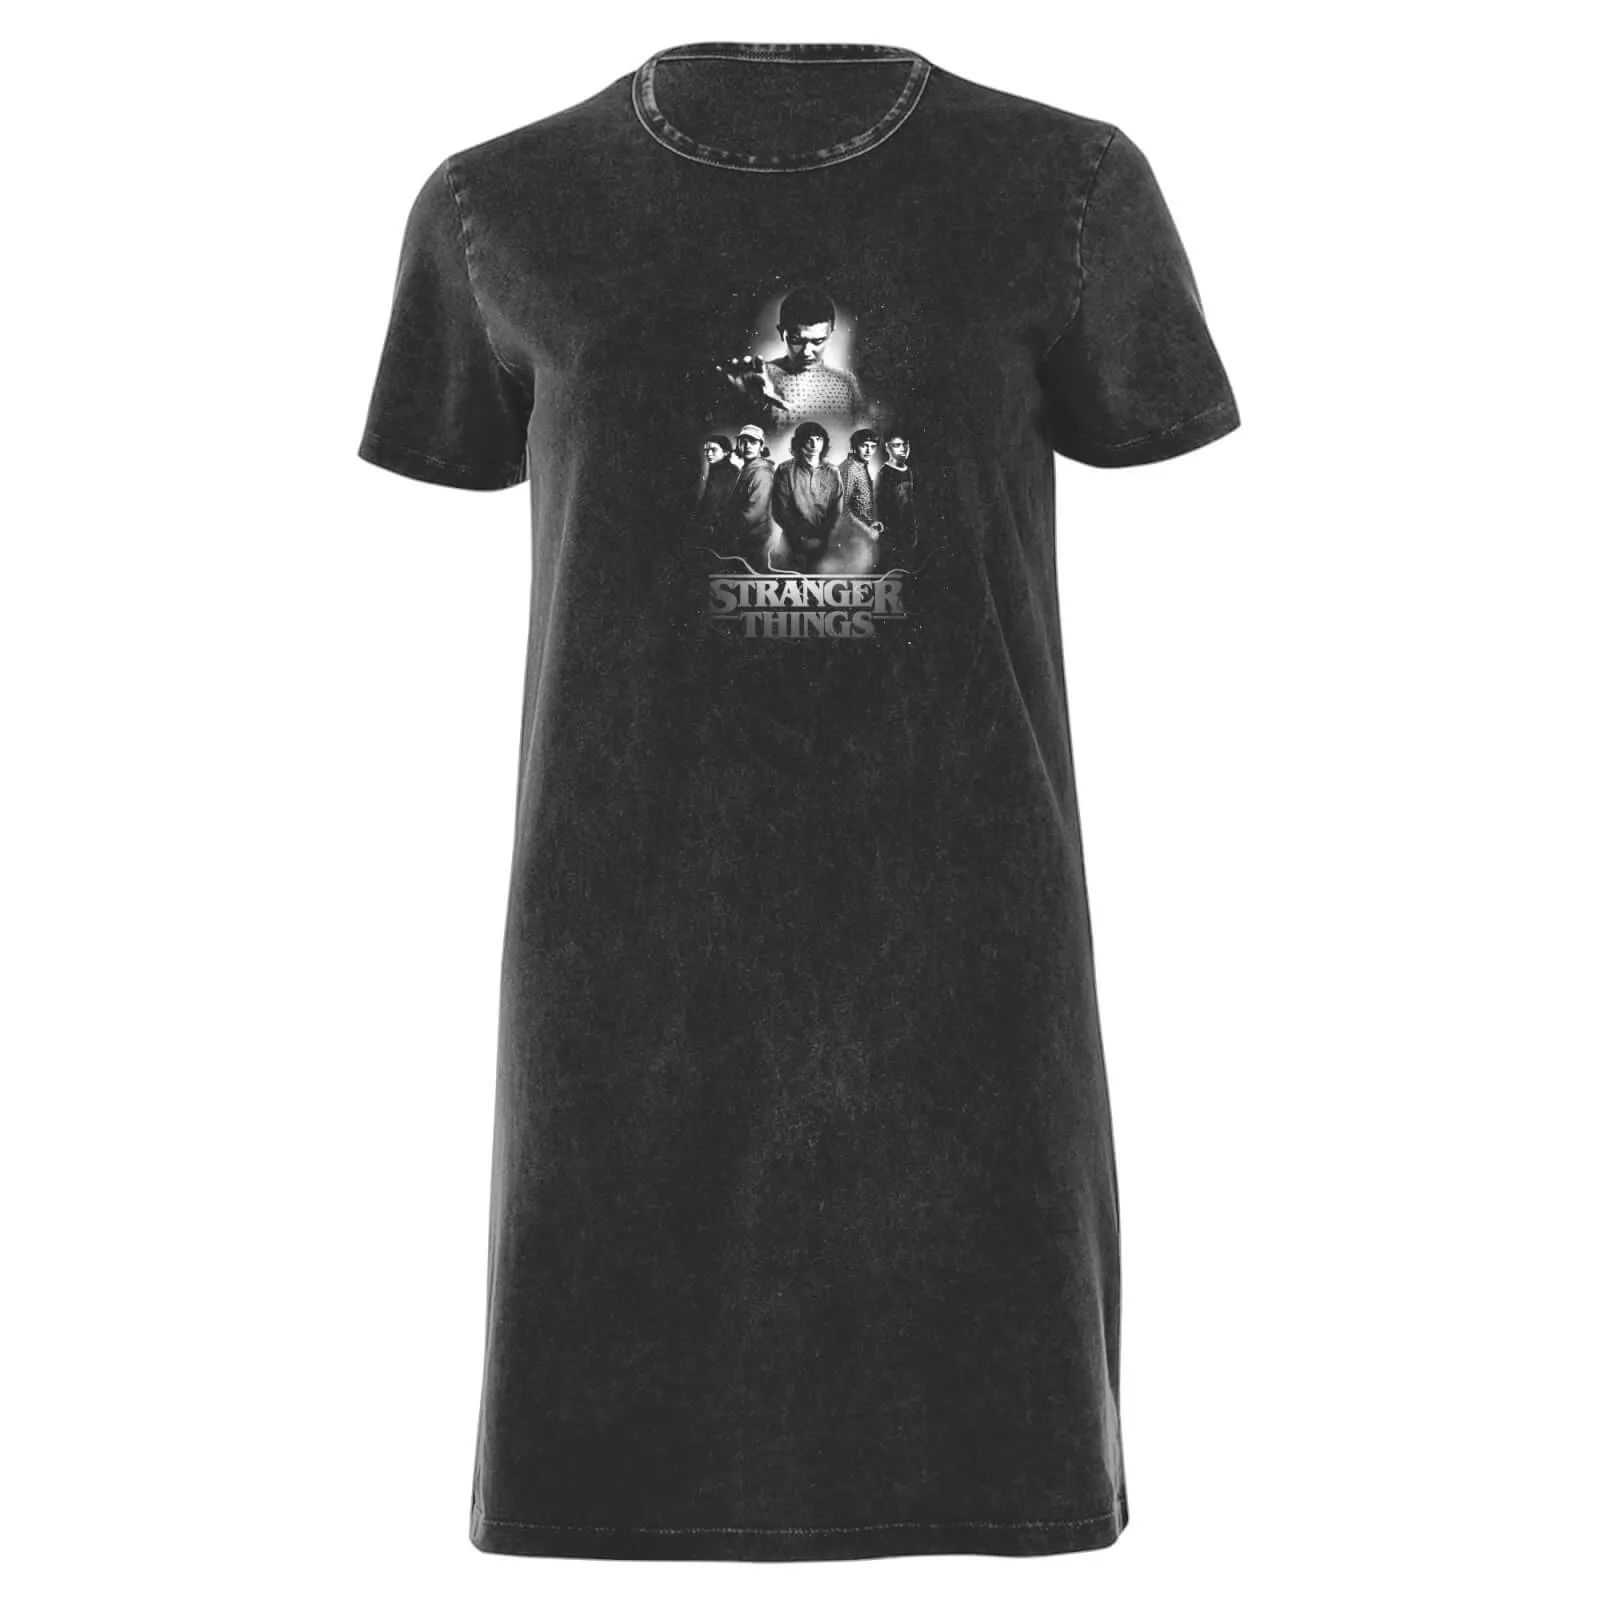  - Vestito T-shirt da donna con composizione dei personaggi in bianco e nero - Lavaggio acido nero - XL - Black Acid Wash